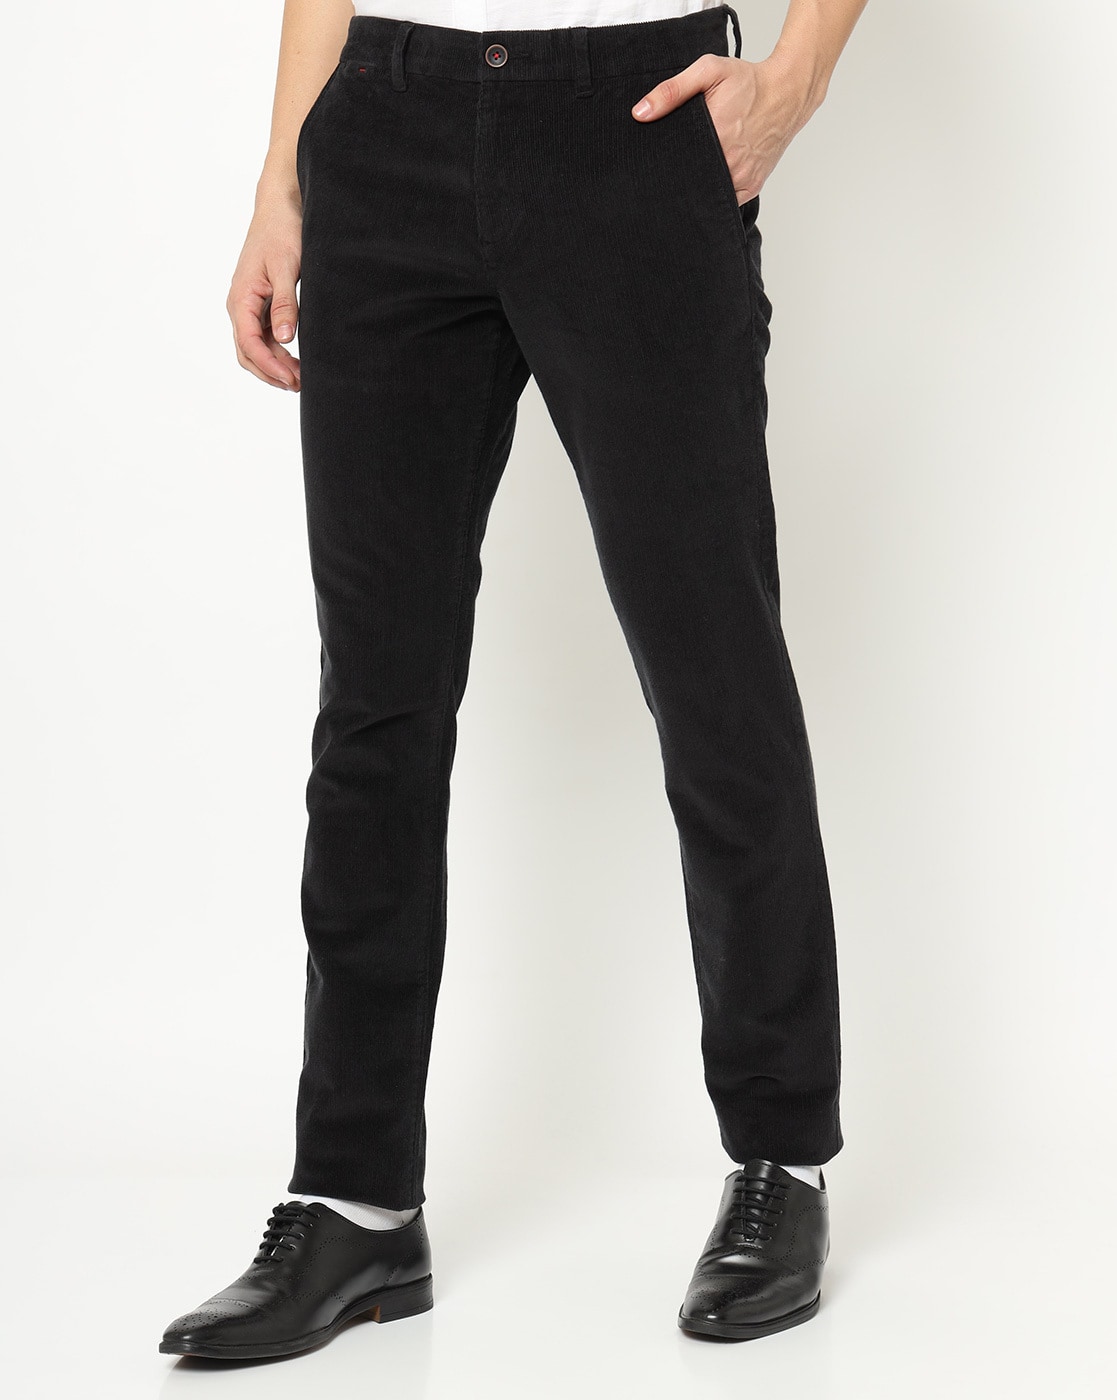 Buy MARK LEUTE Corduroy Trouser for Men 30 Black at Amazonin